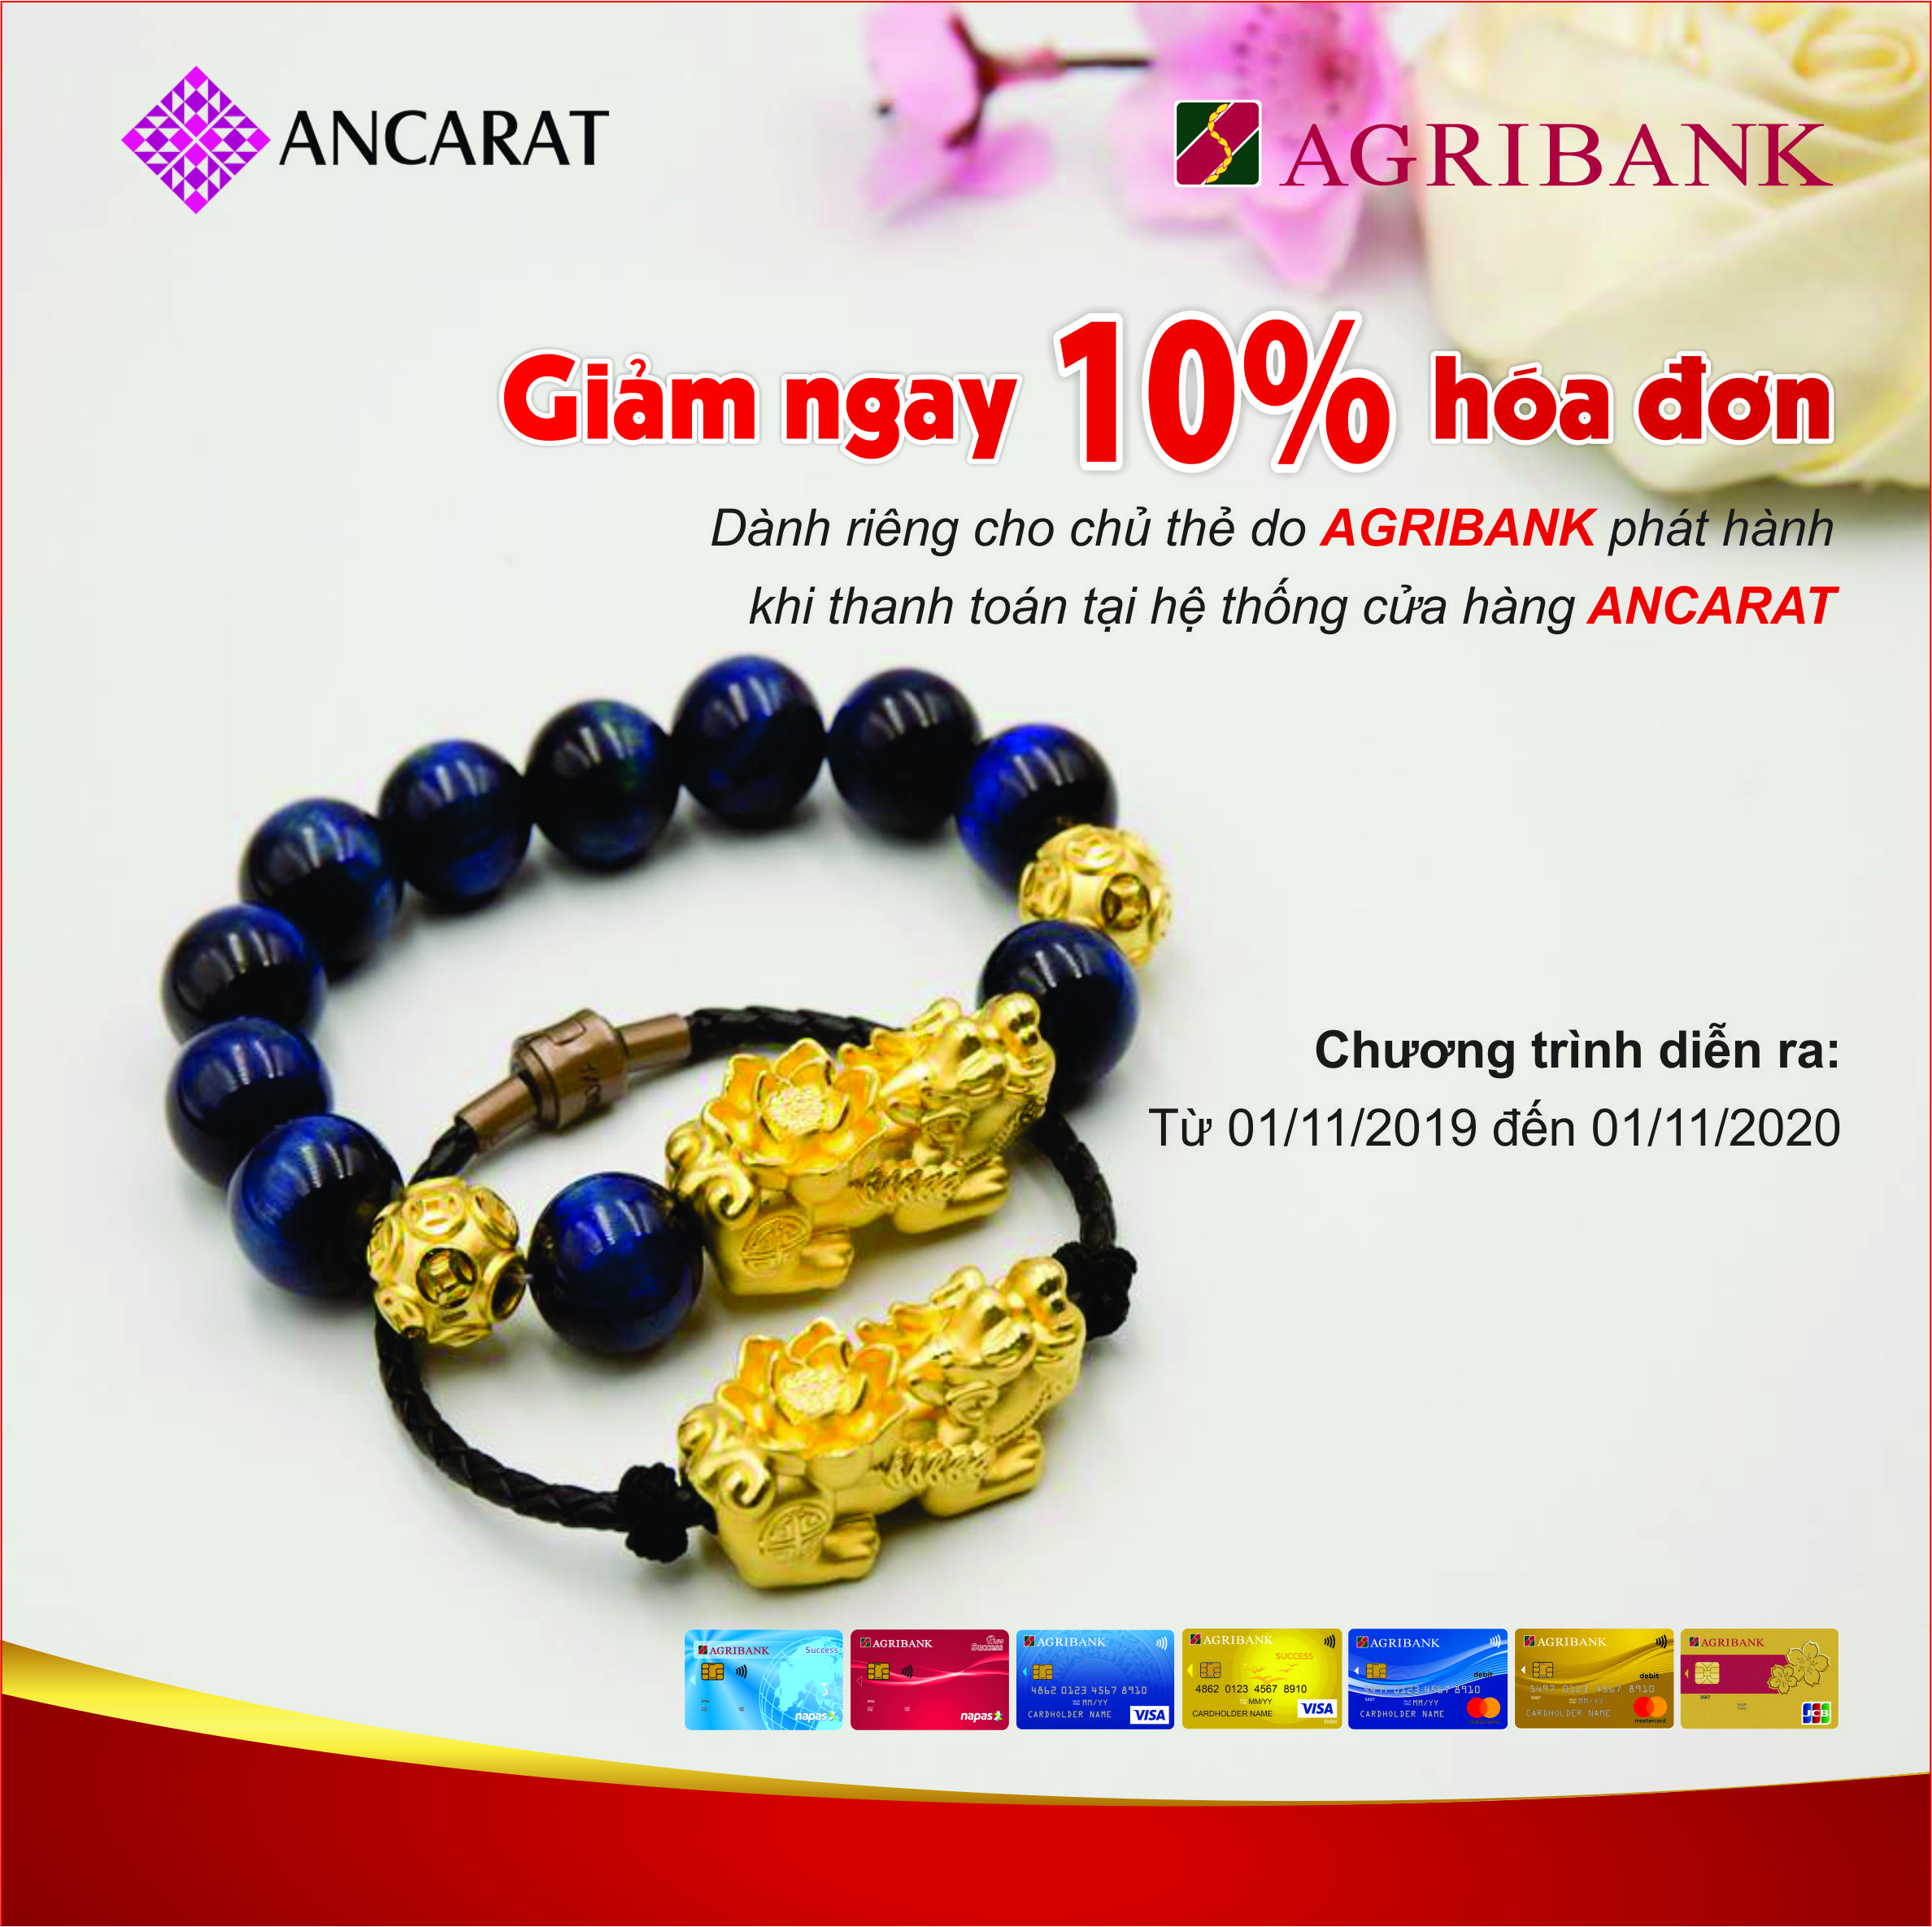 Ưu đãi giảm giá 10% tại Ancarat cùng thẻ Agribank